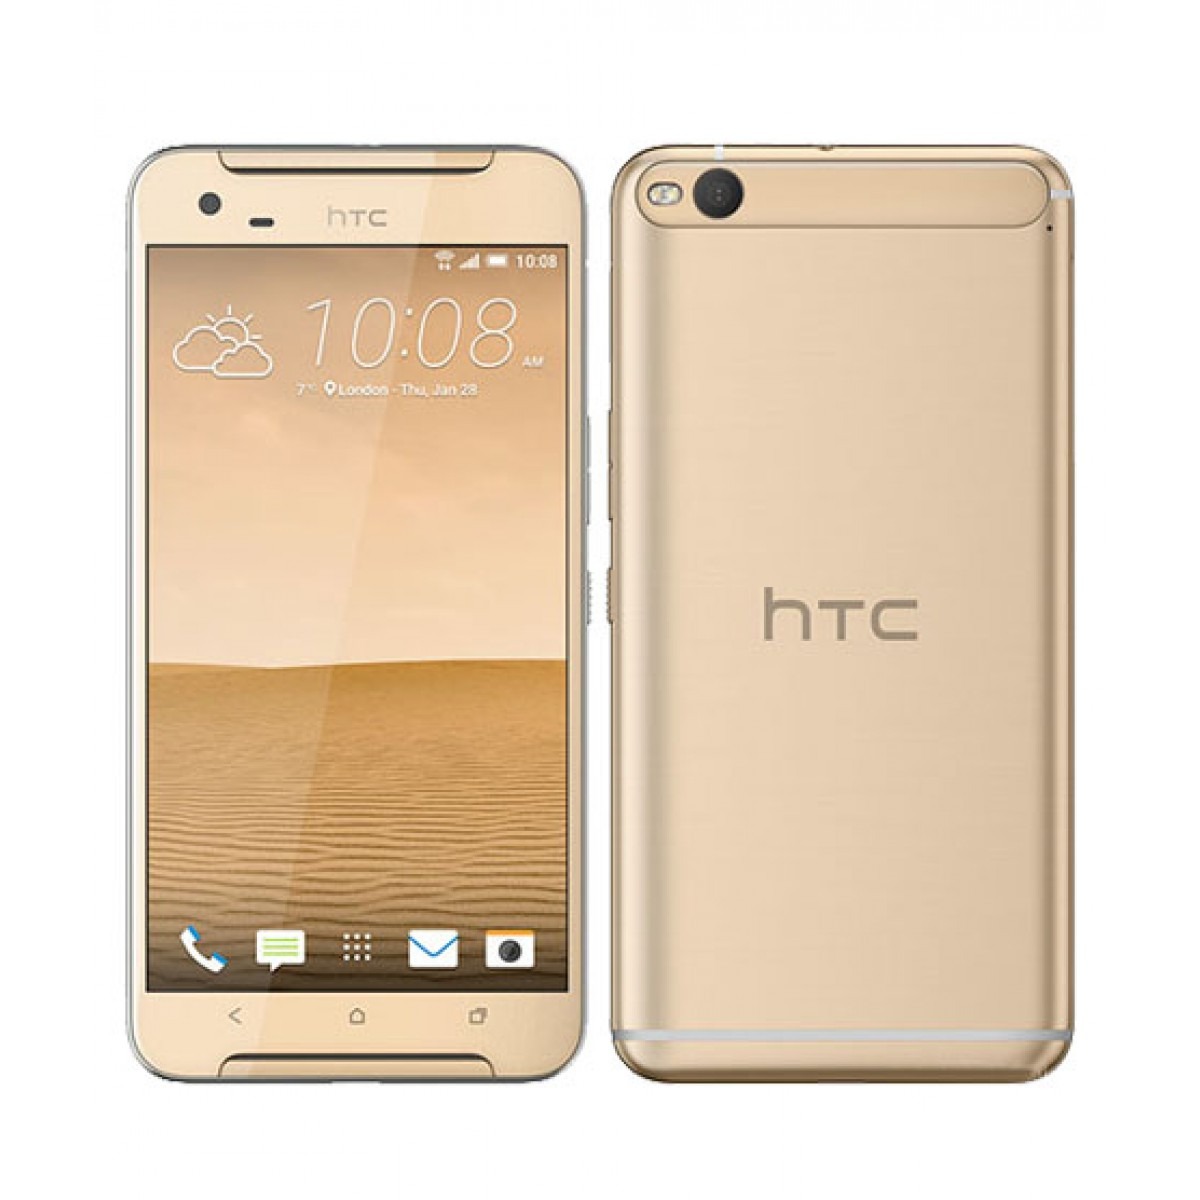  الروم الرسمي لجهاز HTC One X9 الاسم التطوير E56_ML